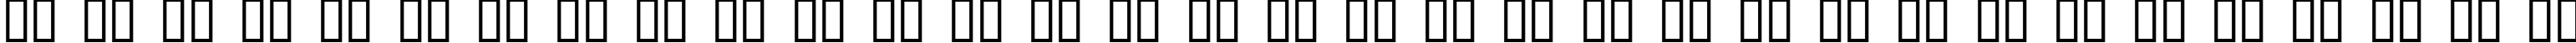 Пример написания русского алфавита шрифтом Rossano Regular